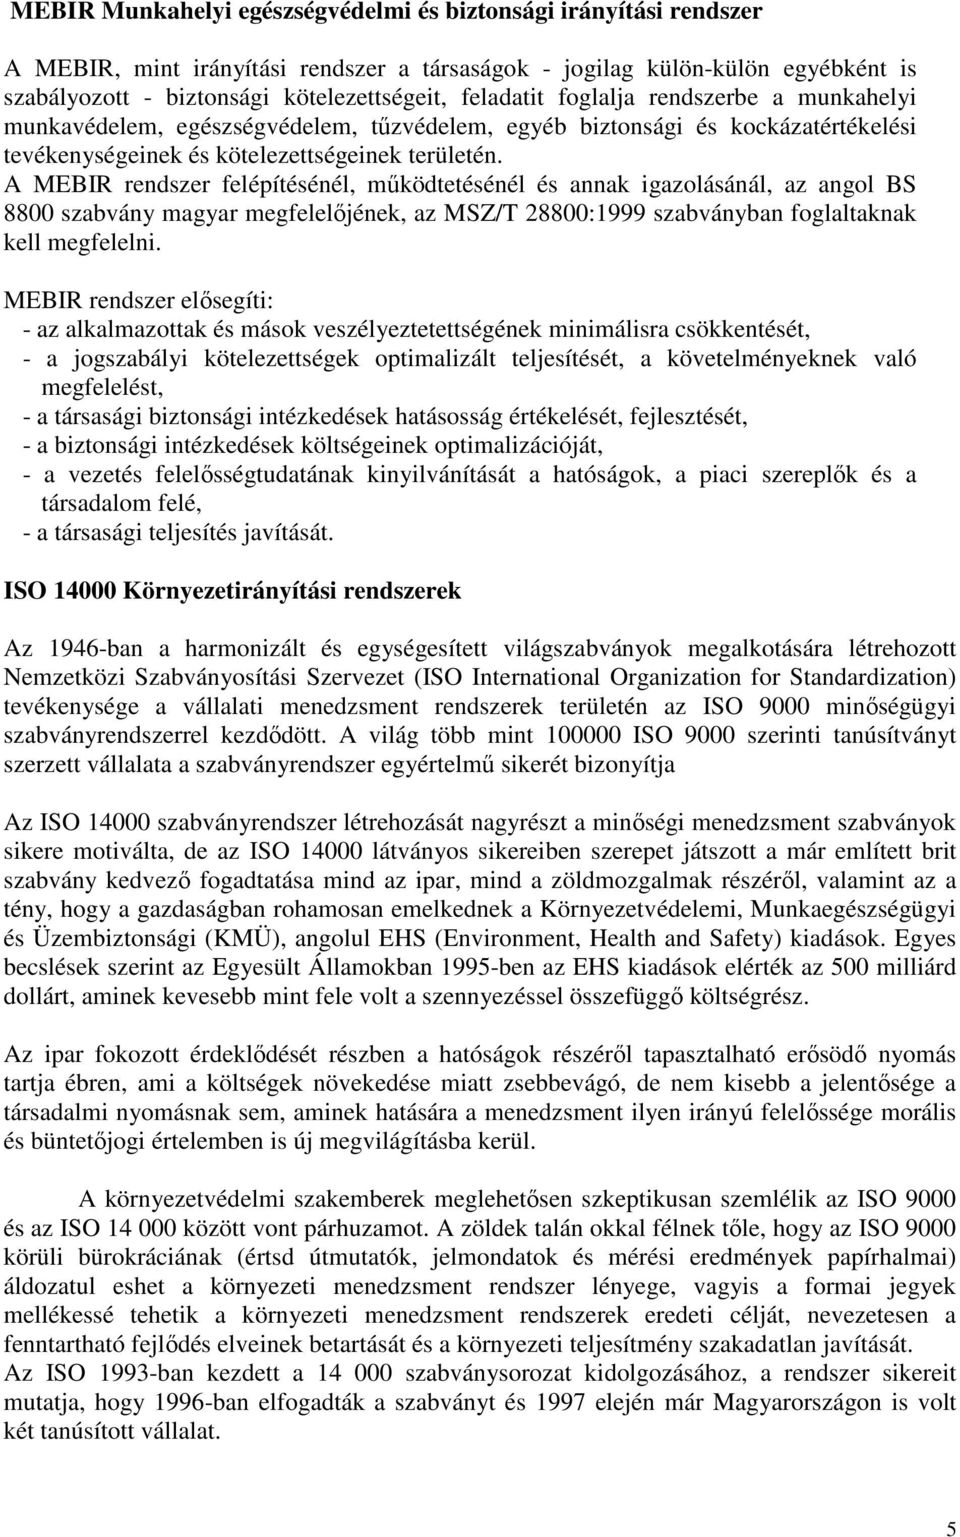 A MEBIR rendszer felépítésénél, mőködtetésénél és annak igazolásánál, az angol BS 8800 szabvány magyar megfelelıjének, az MSZ/T 28800:1999 szabványban foglaltaknak kell megfelelni.